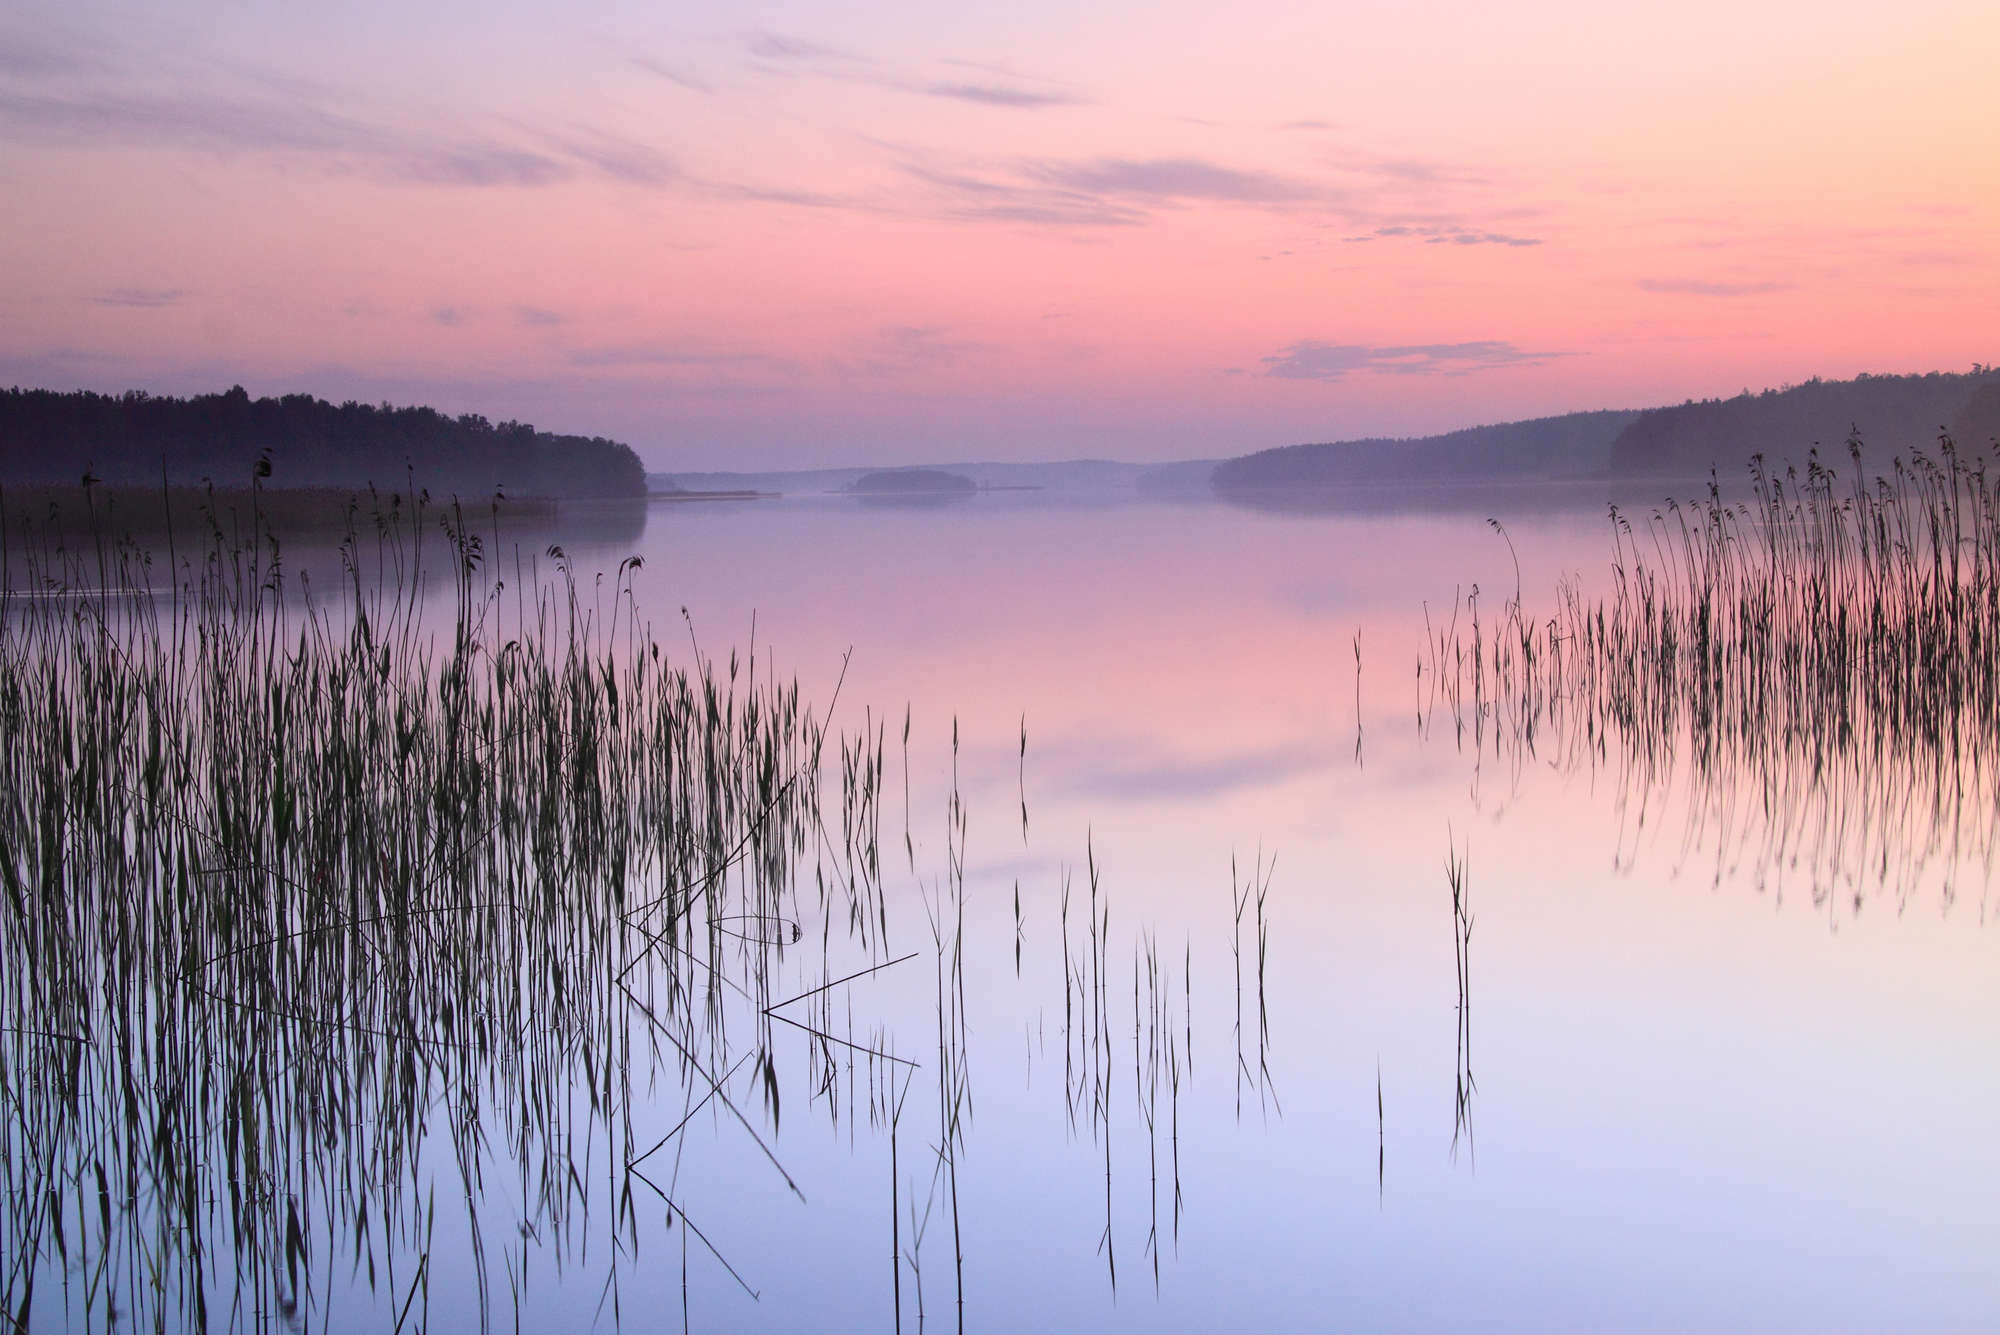             Natur Fototapete See mit Schilf am Abend auf Matt Glattvlies
        